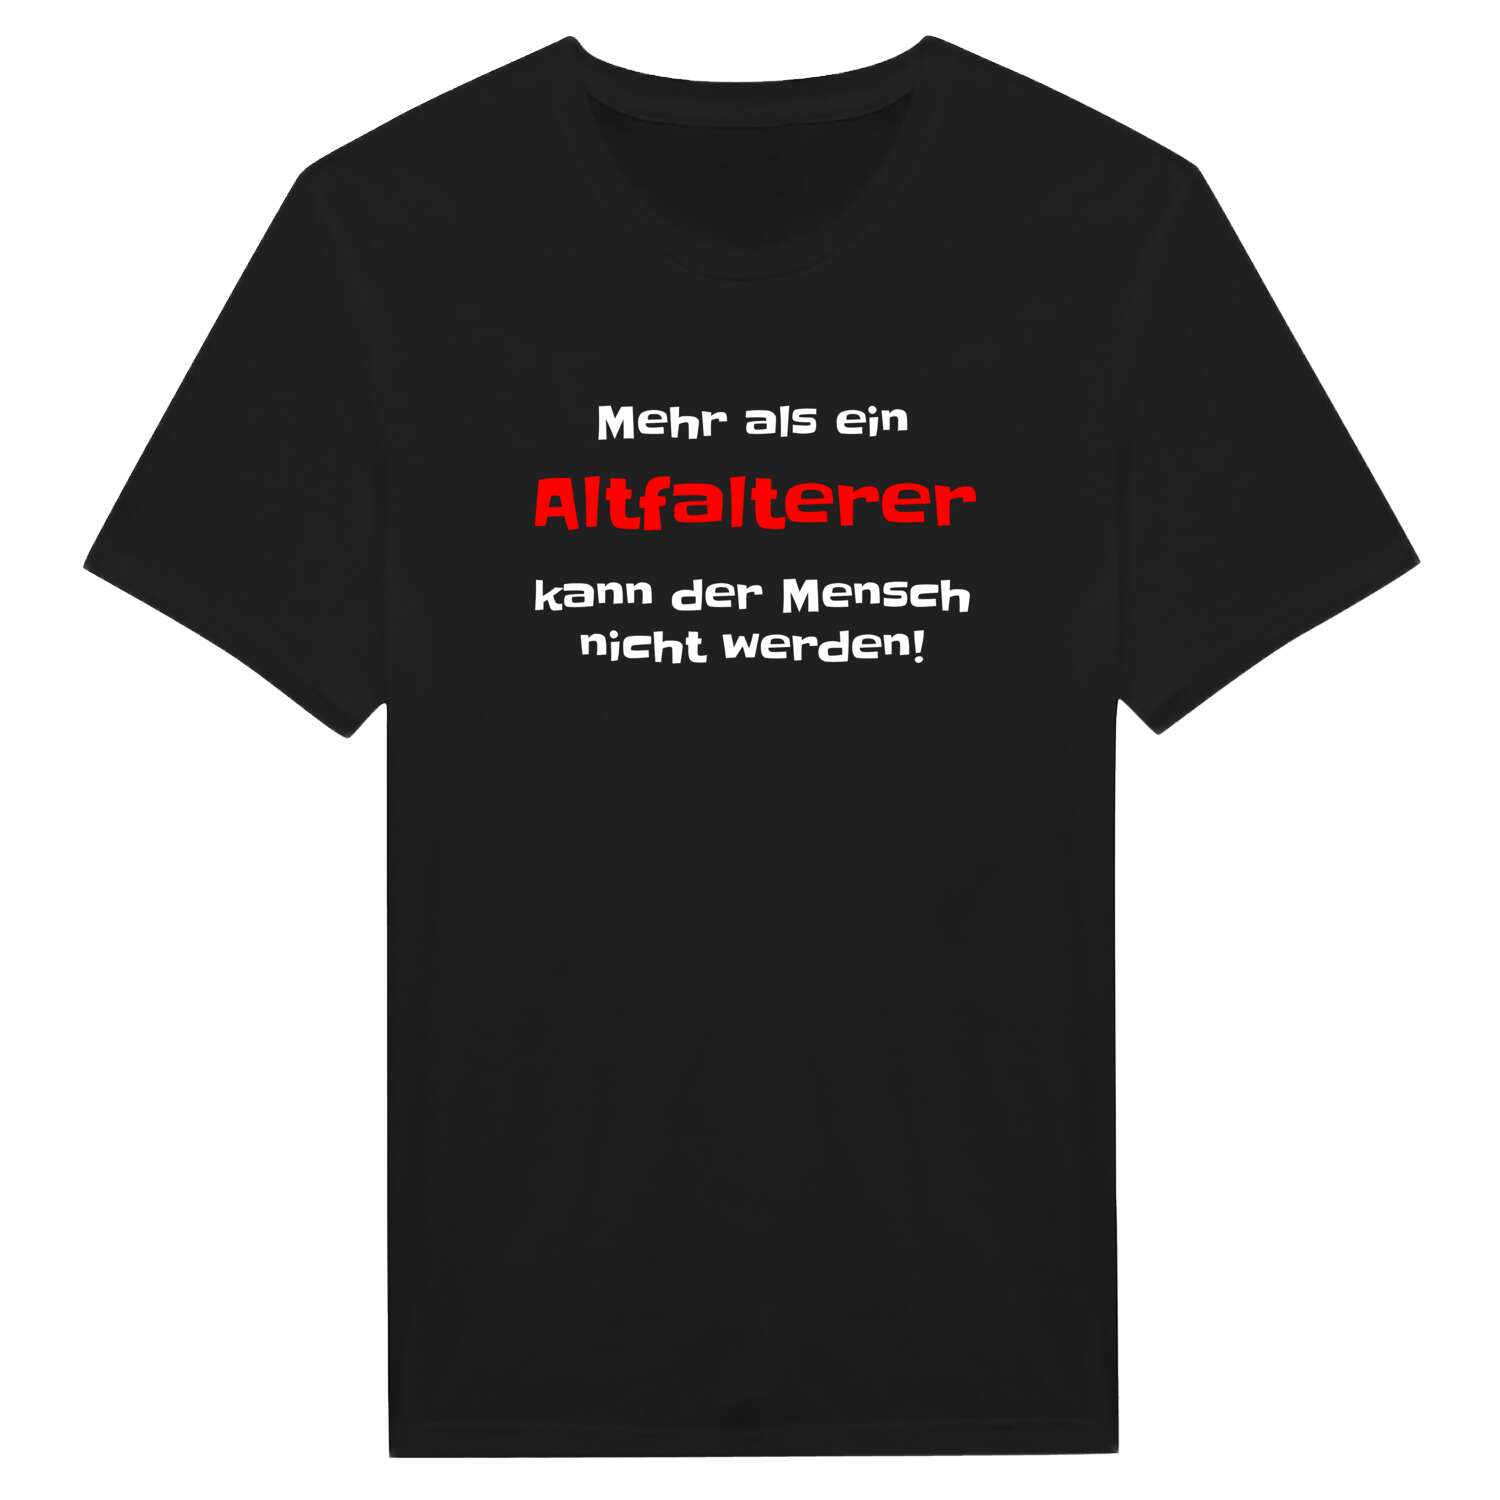 Altfalter T-Shirt »Mehr als ein«